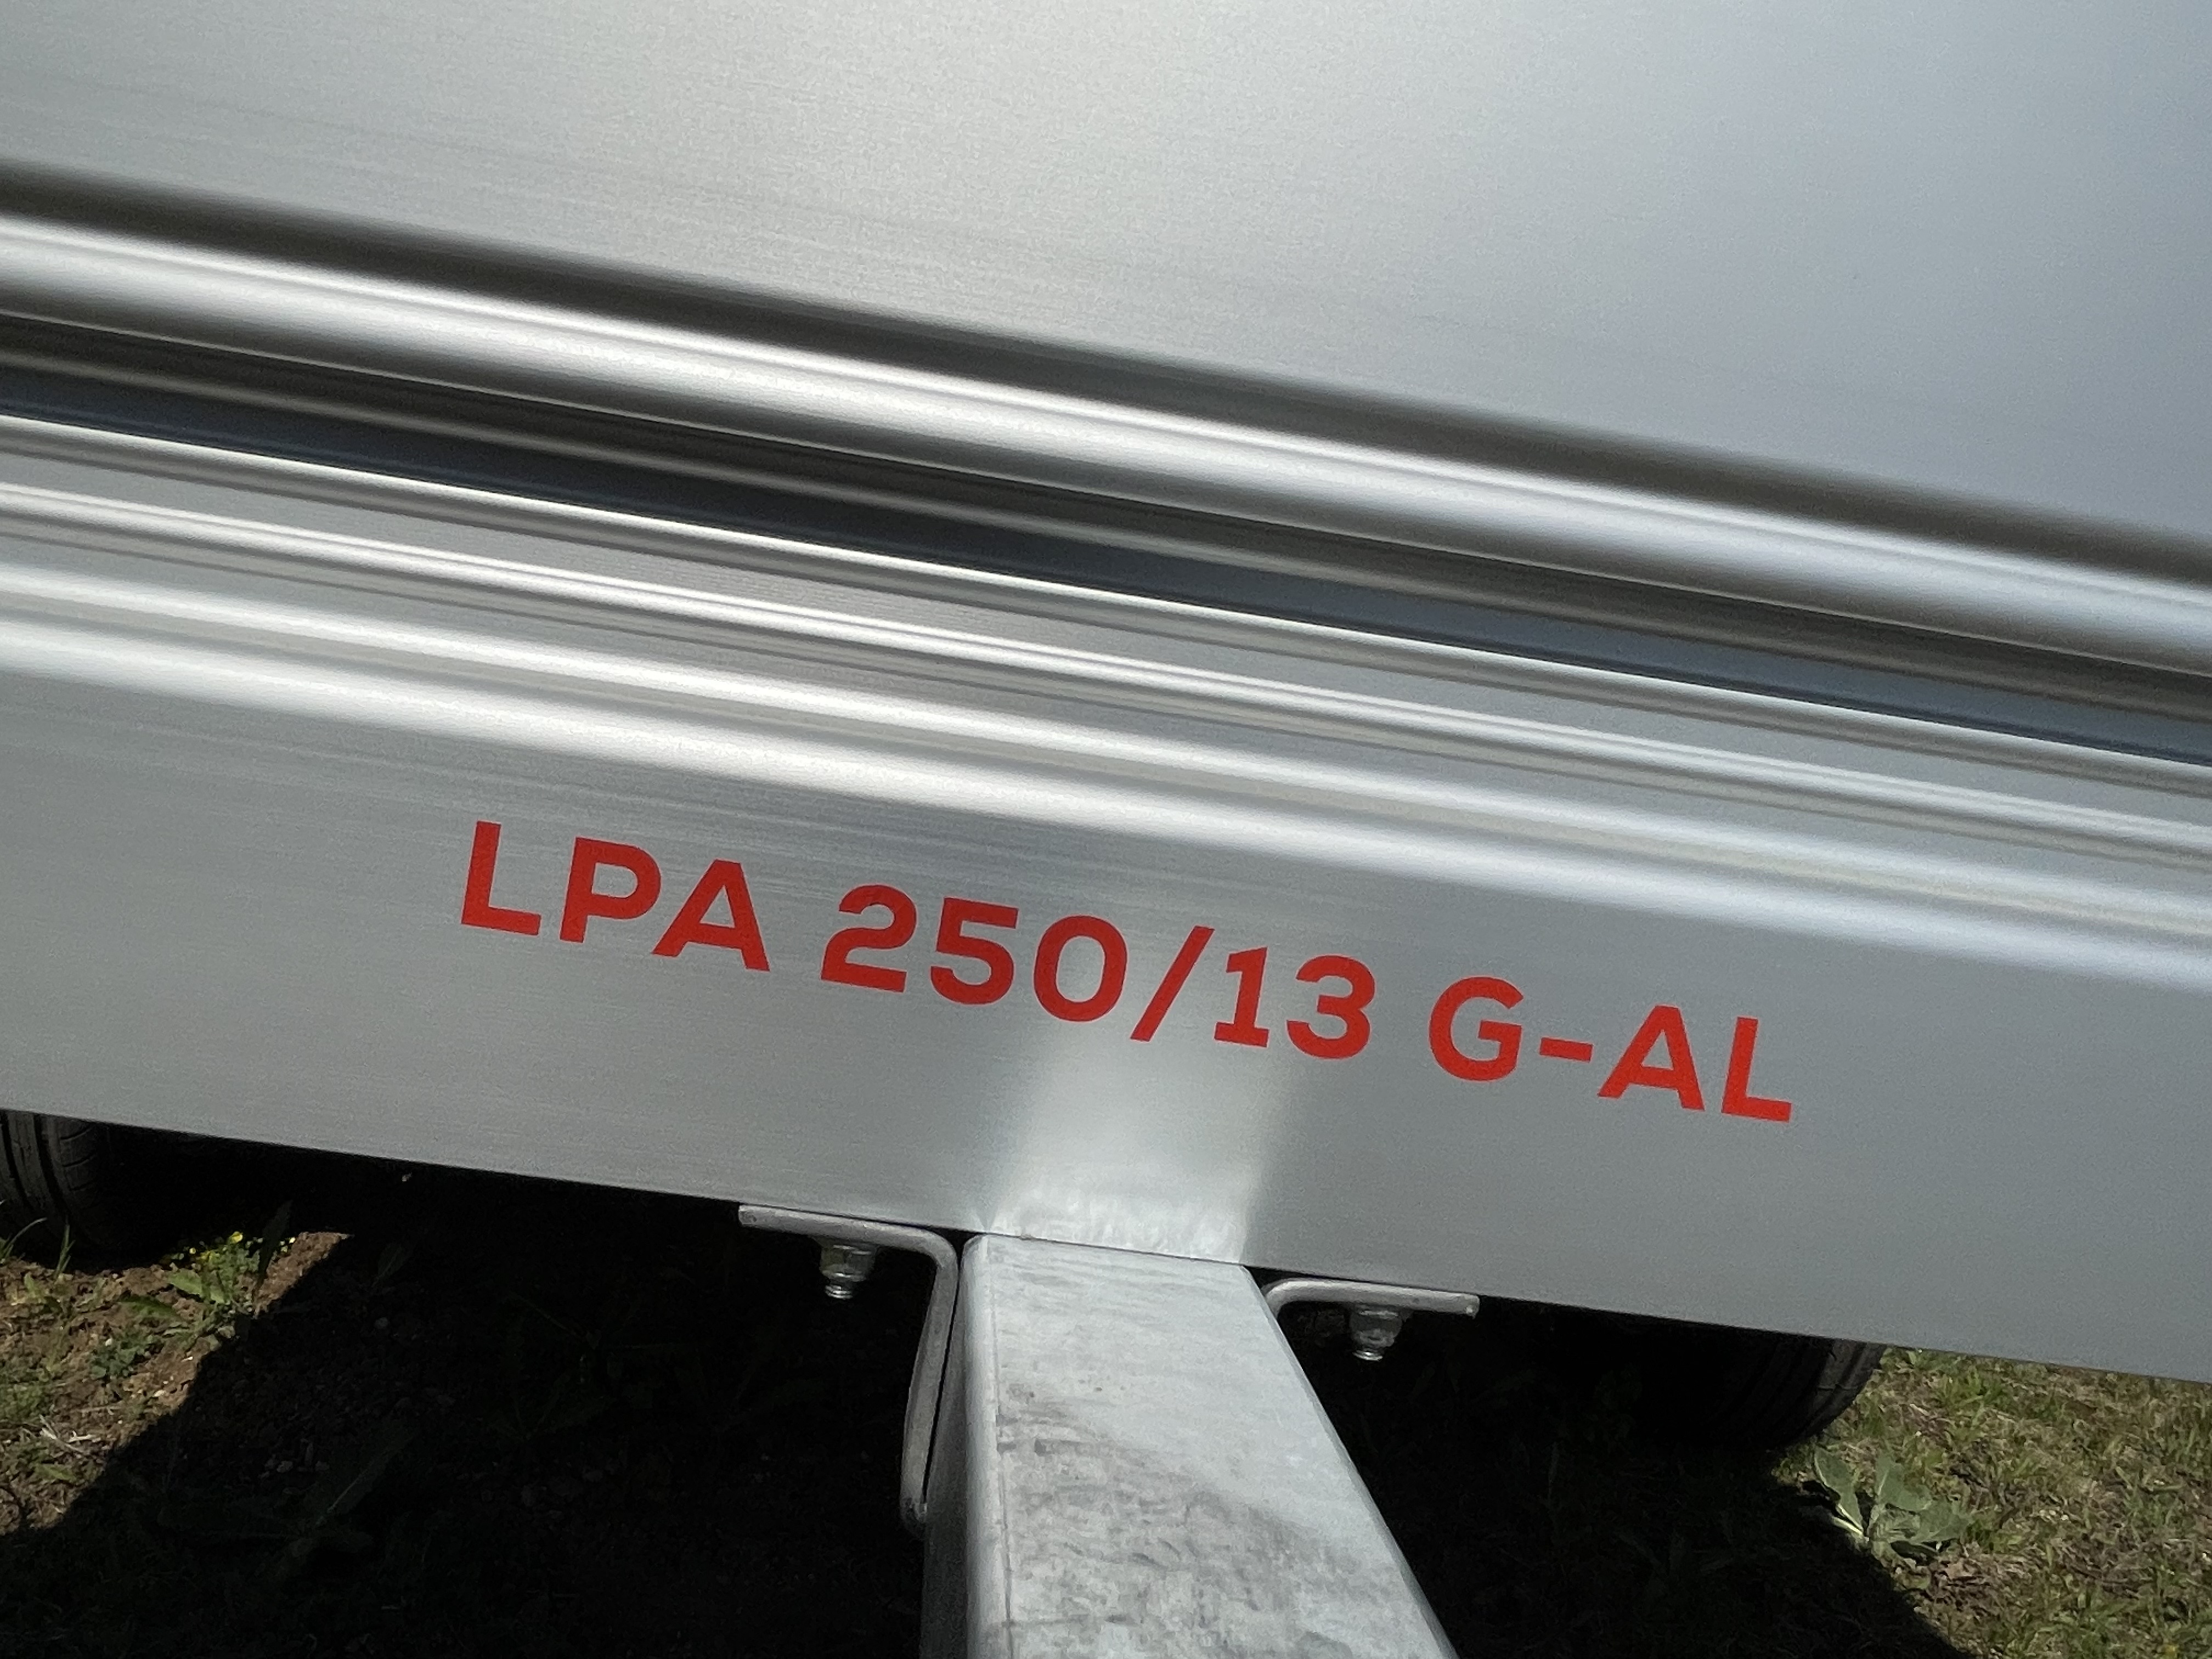 LPA 250/13G-AL